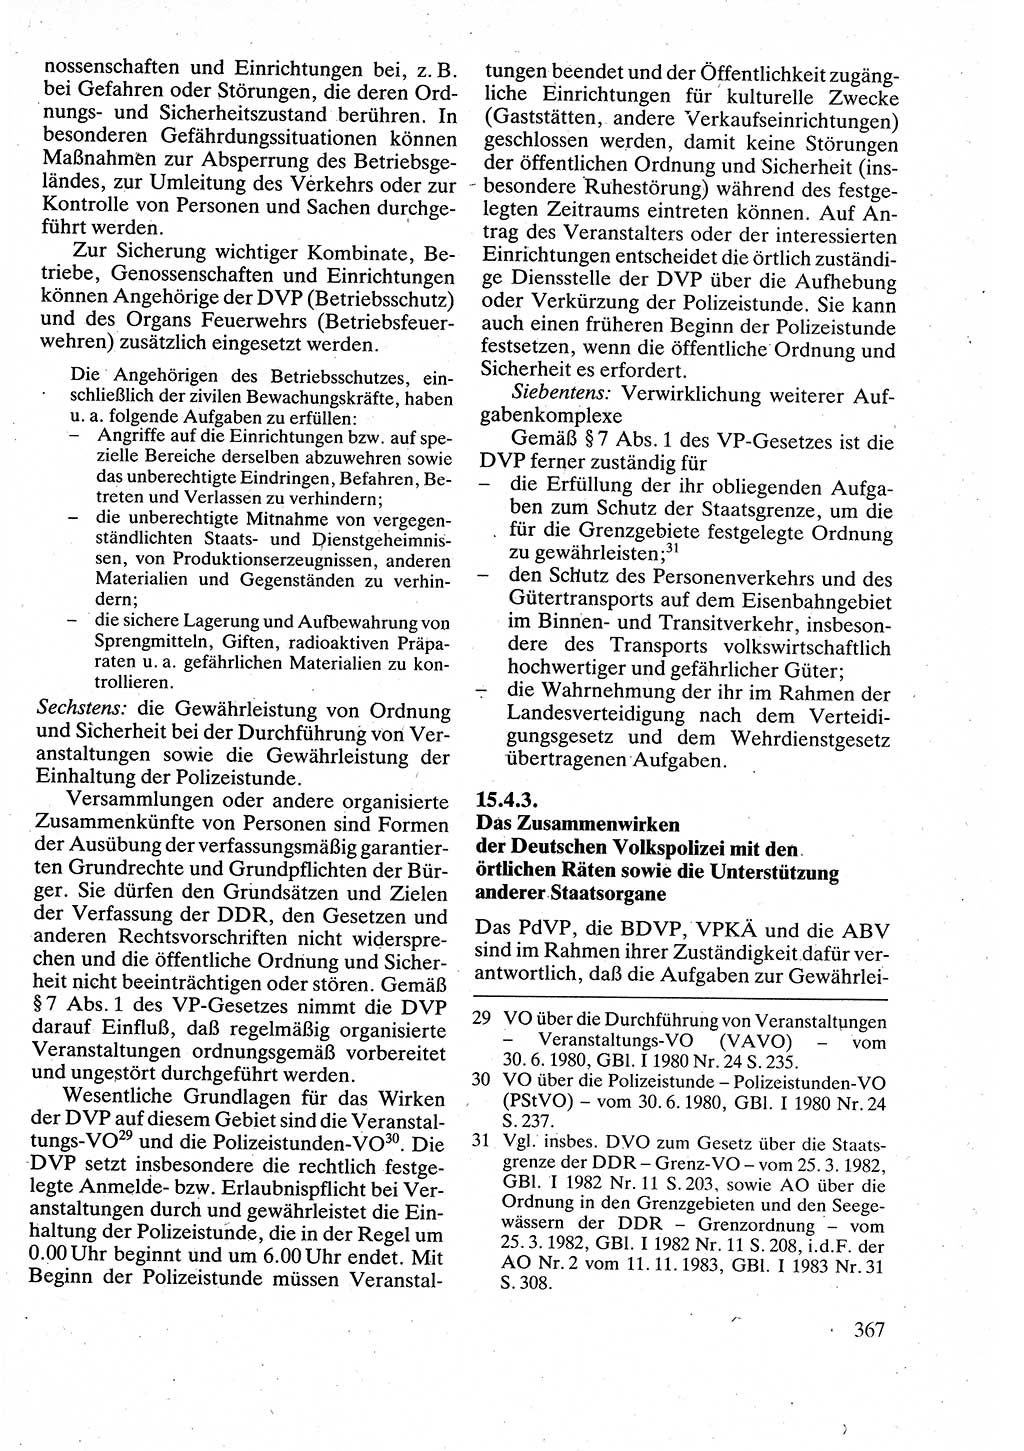 Verwaltungsrecht [Deutsche Demokratische Republik (DDR)], Lehrbuch 1988, Seite 367 (Verw.-R. DDR Lb. 1988, S. 367)